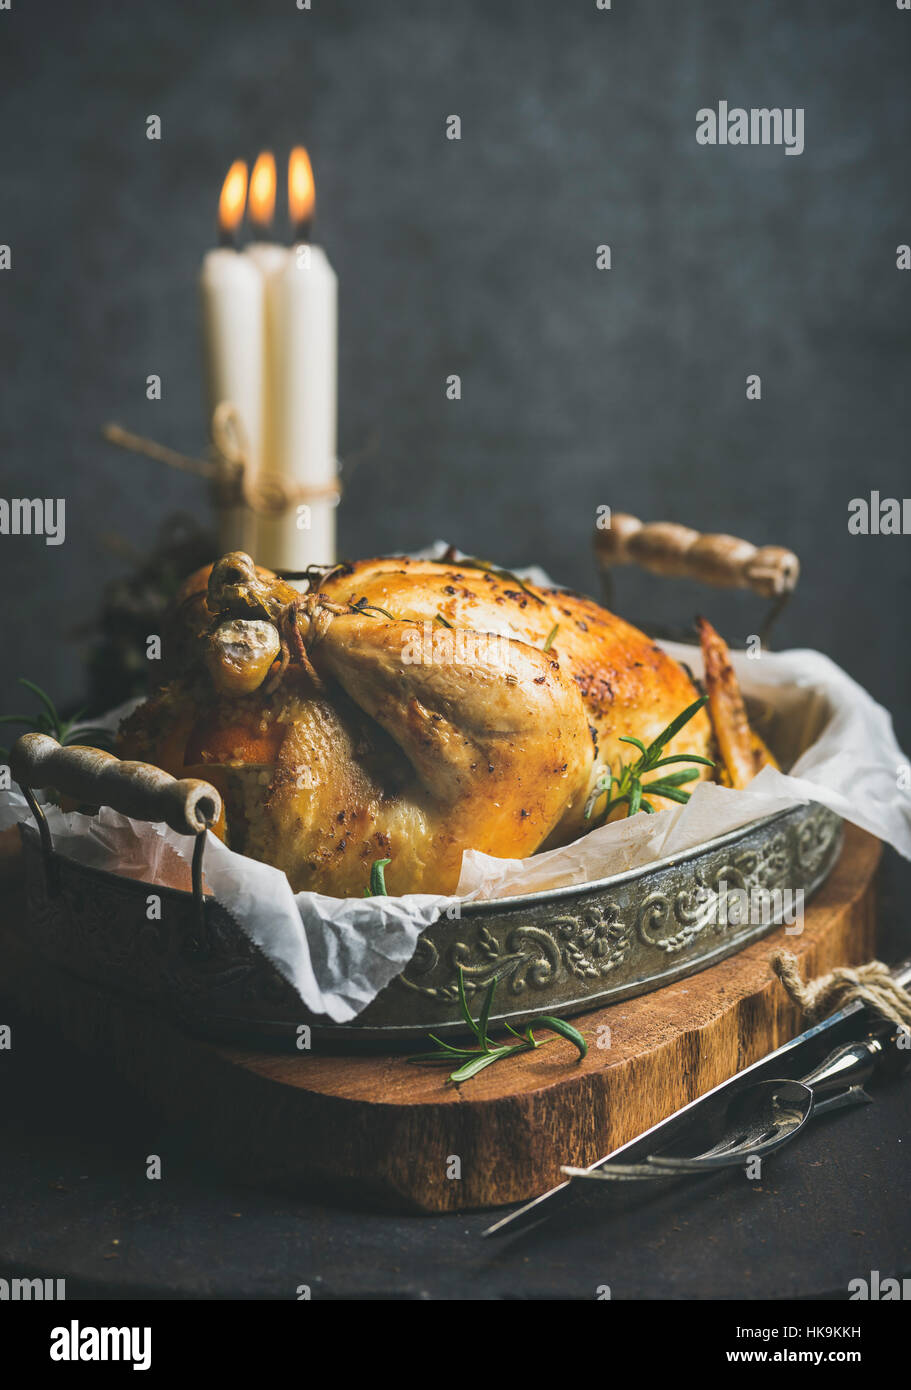 Weihnachtstisch mit Backofen gebratenes ganzes Huhn mit Orangen, Bulgur und Rosmarin, dekorative Kerzen auf Holzbrett, graue Betonwand staatlich festgelegt Stockfoto